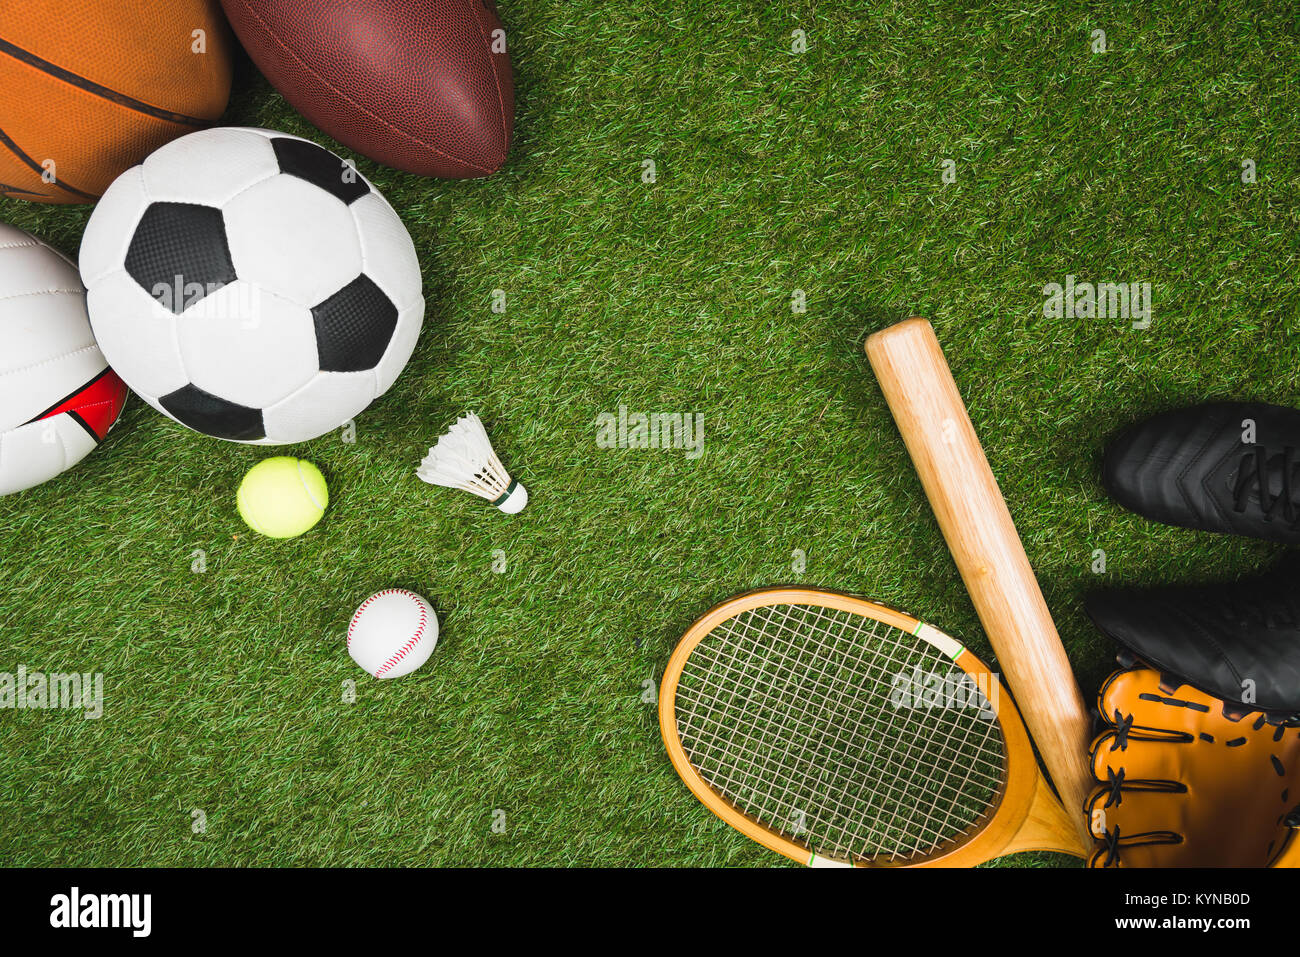 Vue de dessus de divers sport balls, batte de baseball et de gants, badminton racket sur pelouse verte Banque D'Images